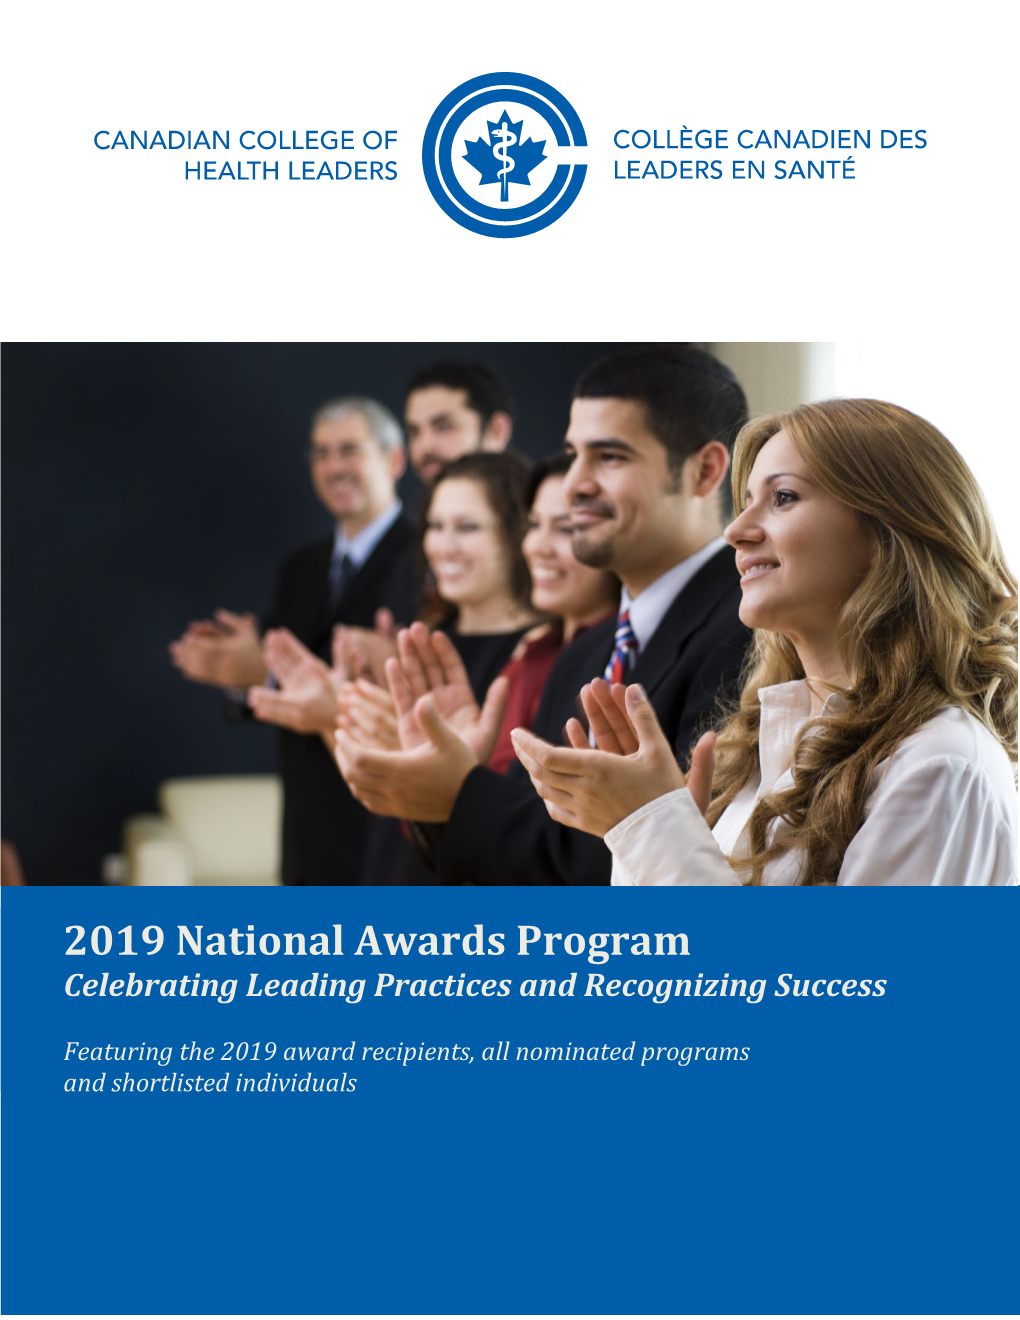 2019 National Awards Program – Celebrating Leading Practices